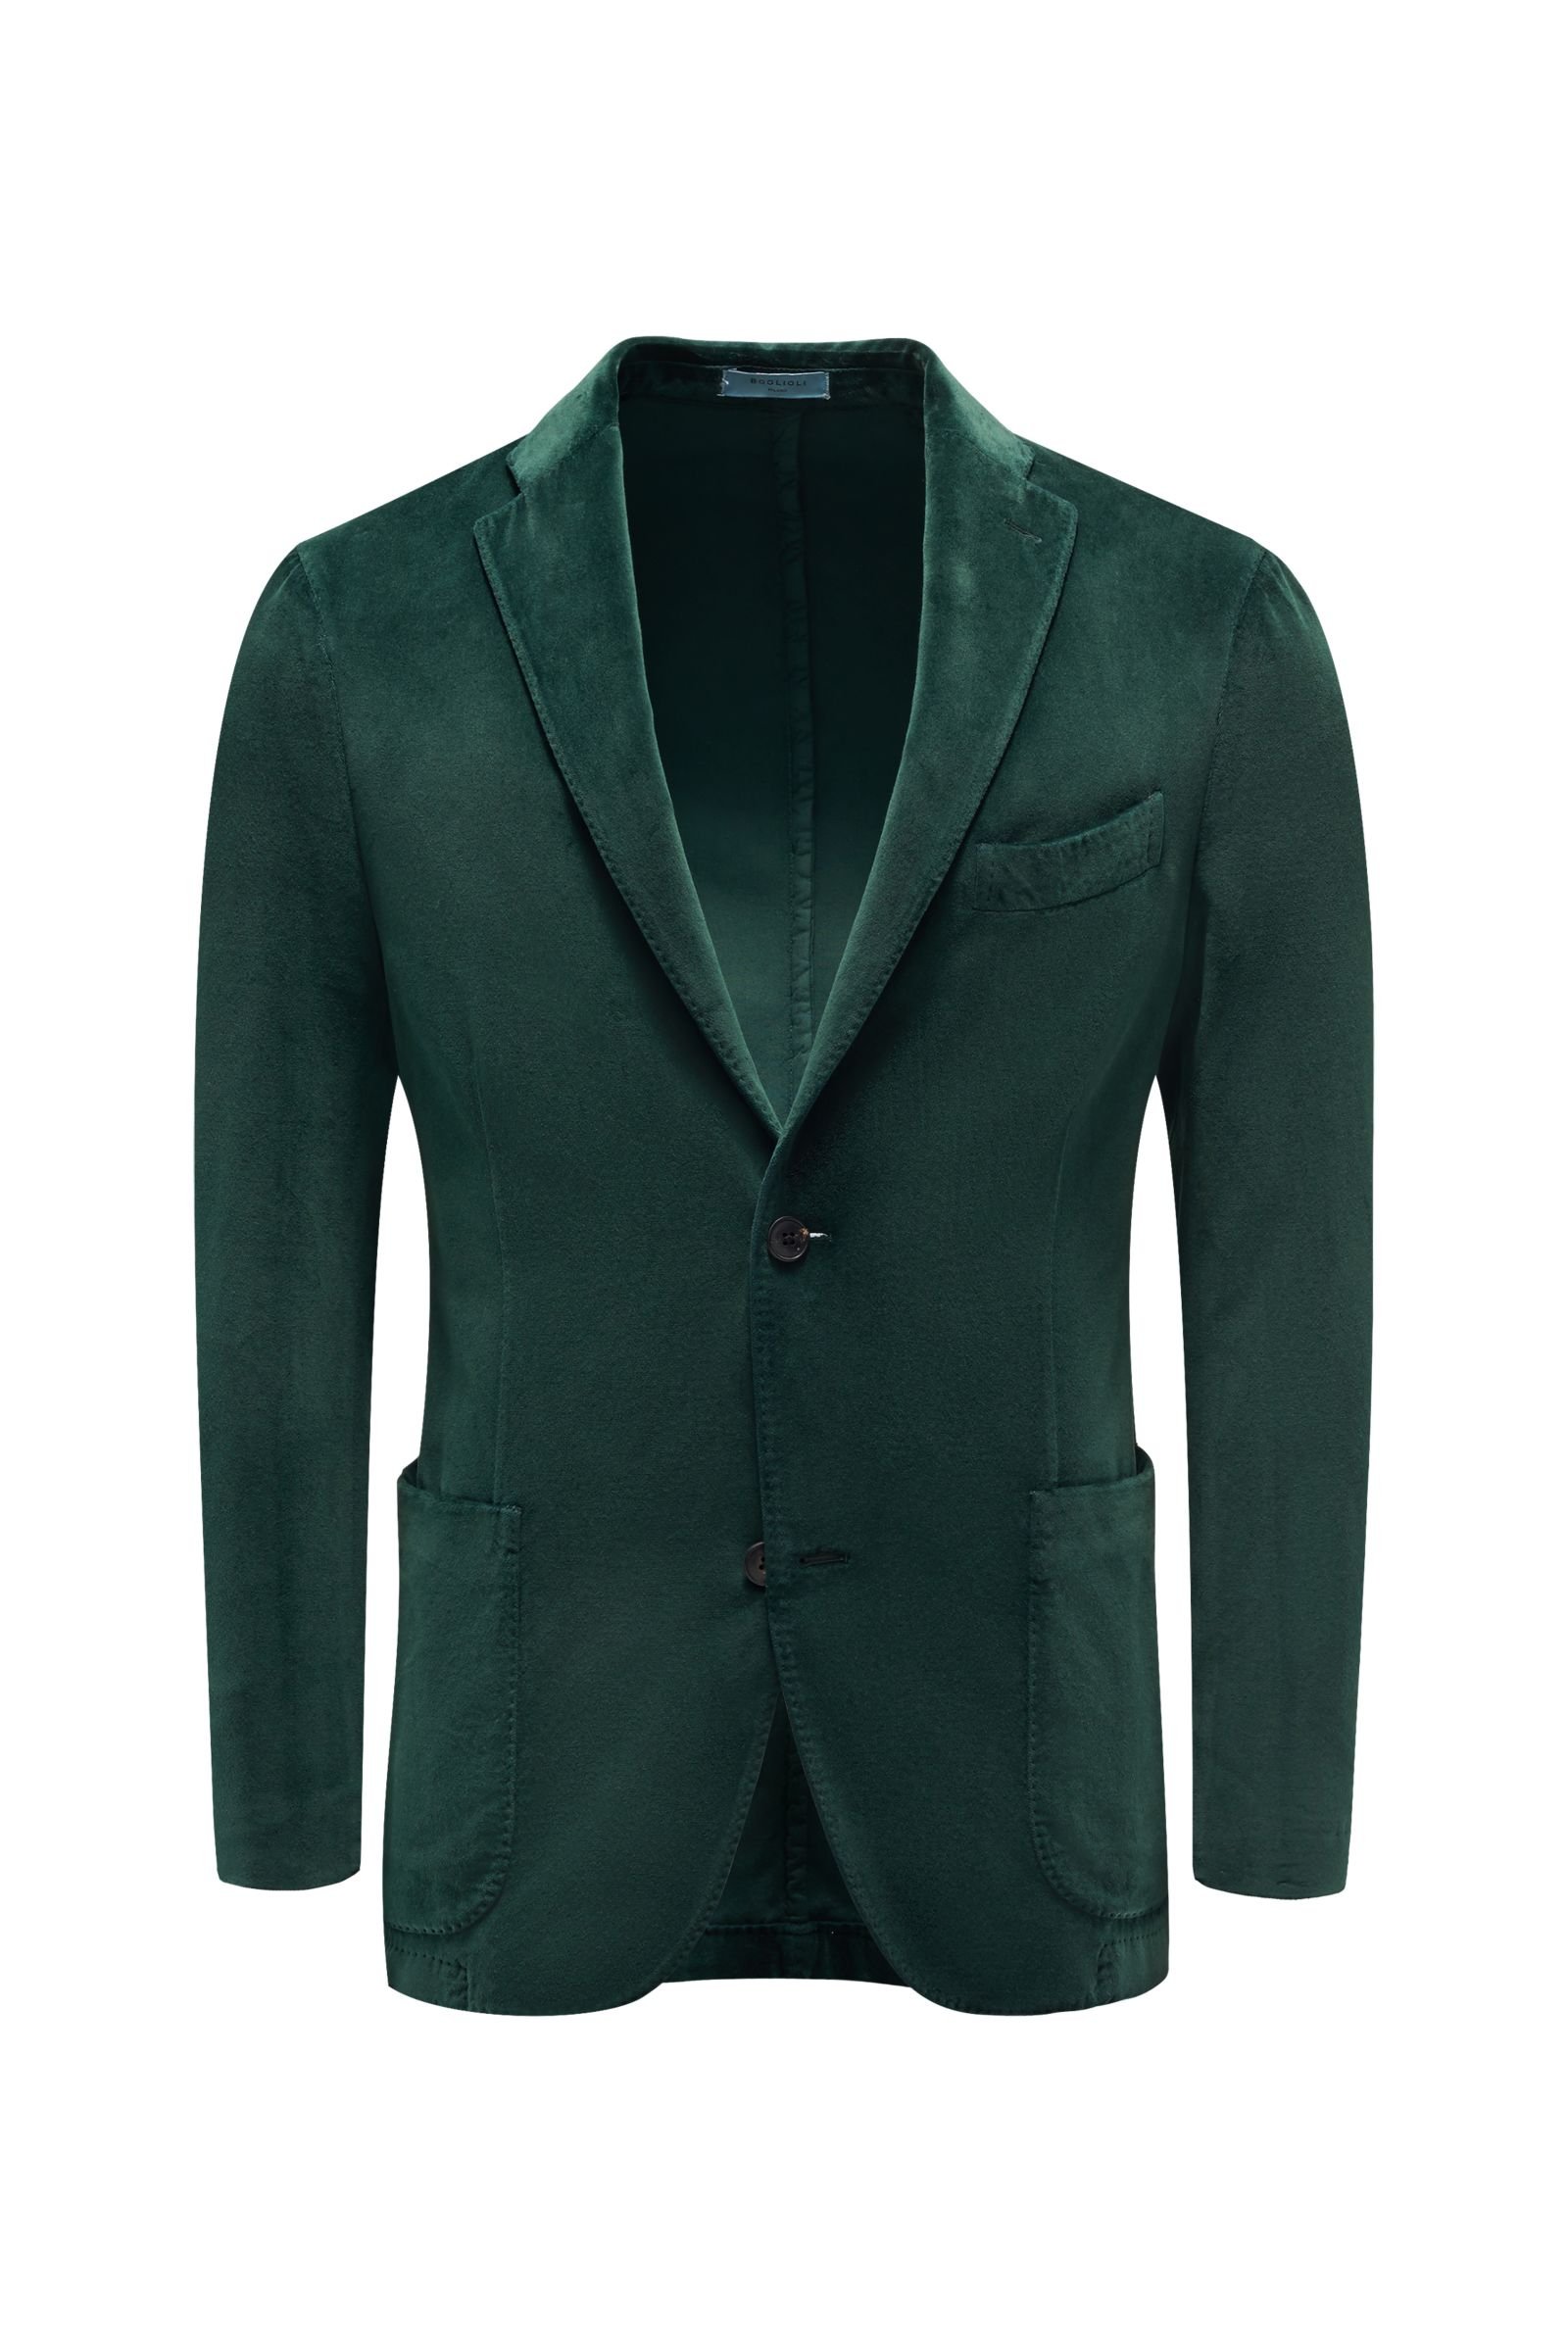 Velvet jacket green